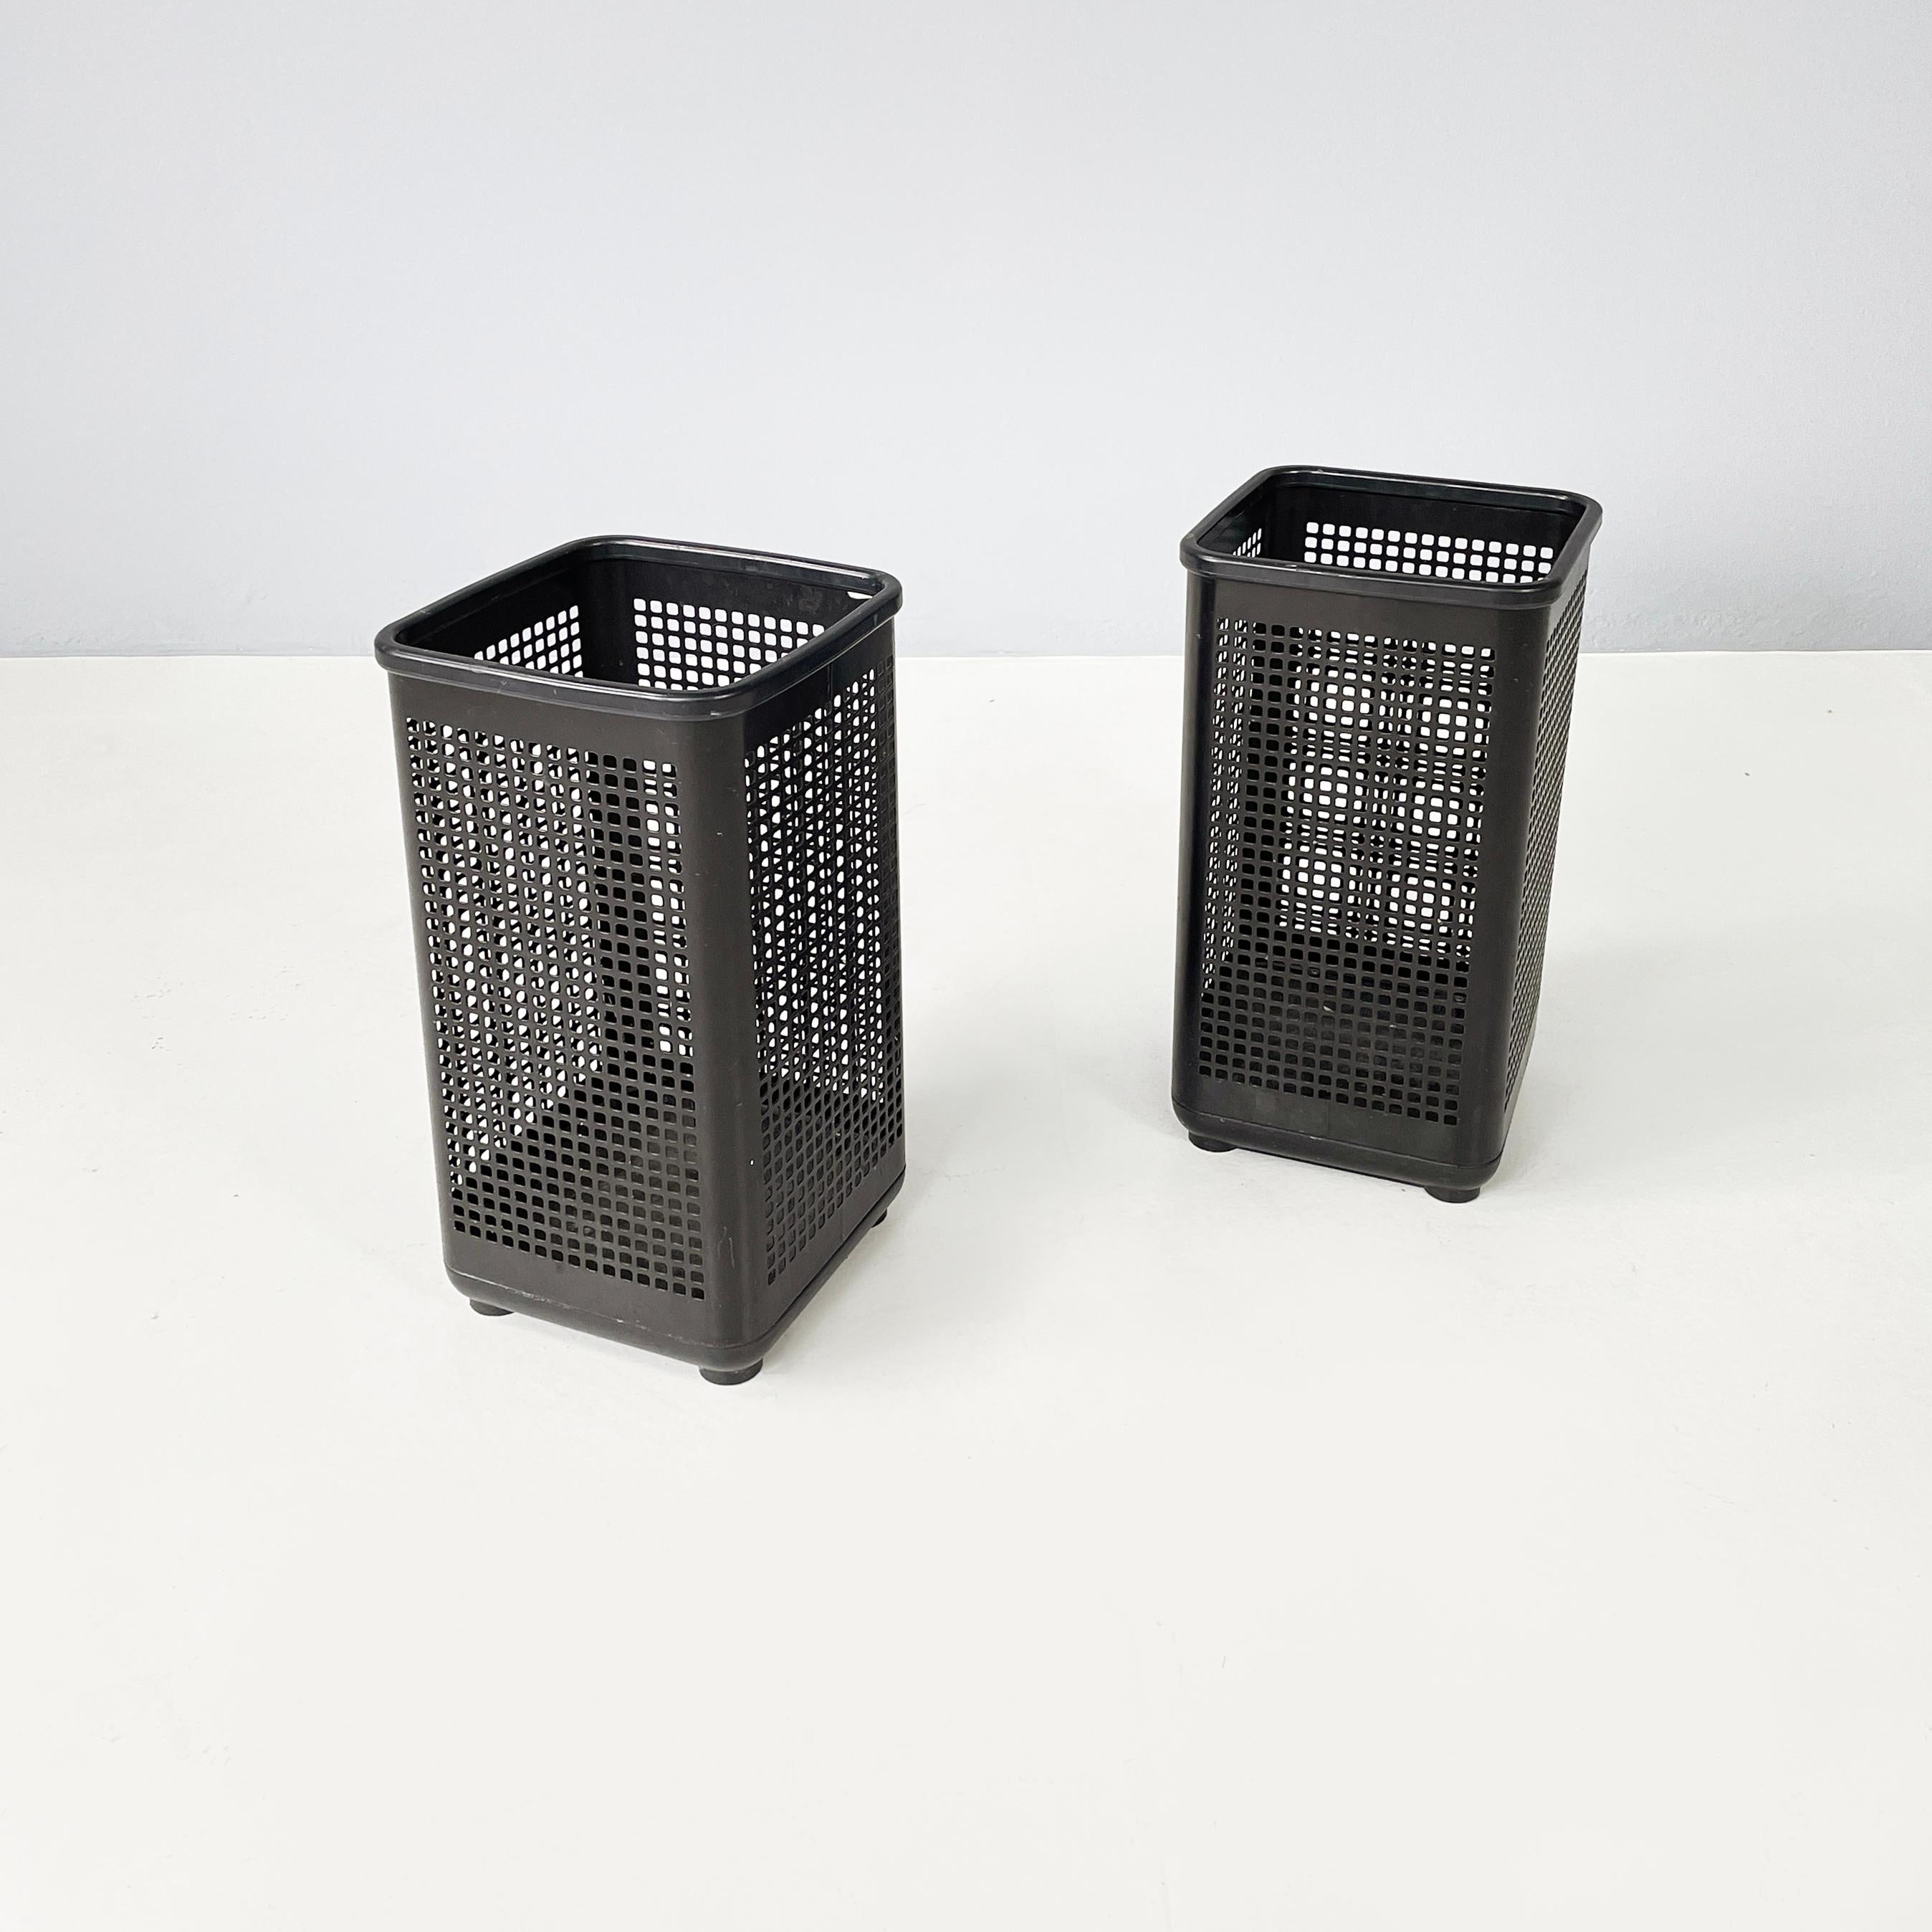 Italienische moderne Schwarze Körbe aus Metall und Kunststoff von Neolt, 1980er Jahre
Ein Paar quadratische Bürokörbe. Die Hauptstruktur besteht aus einem perforierten Blech mit quadratischen Löchern und ist schwarz lackiert mit einer matten